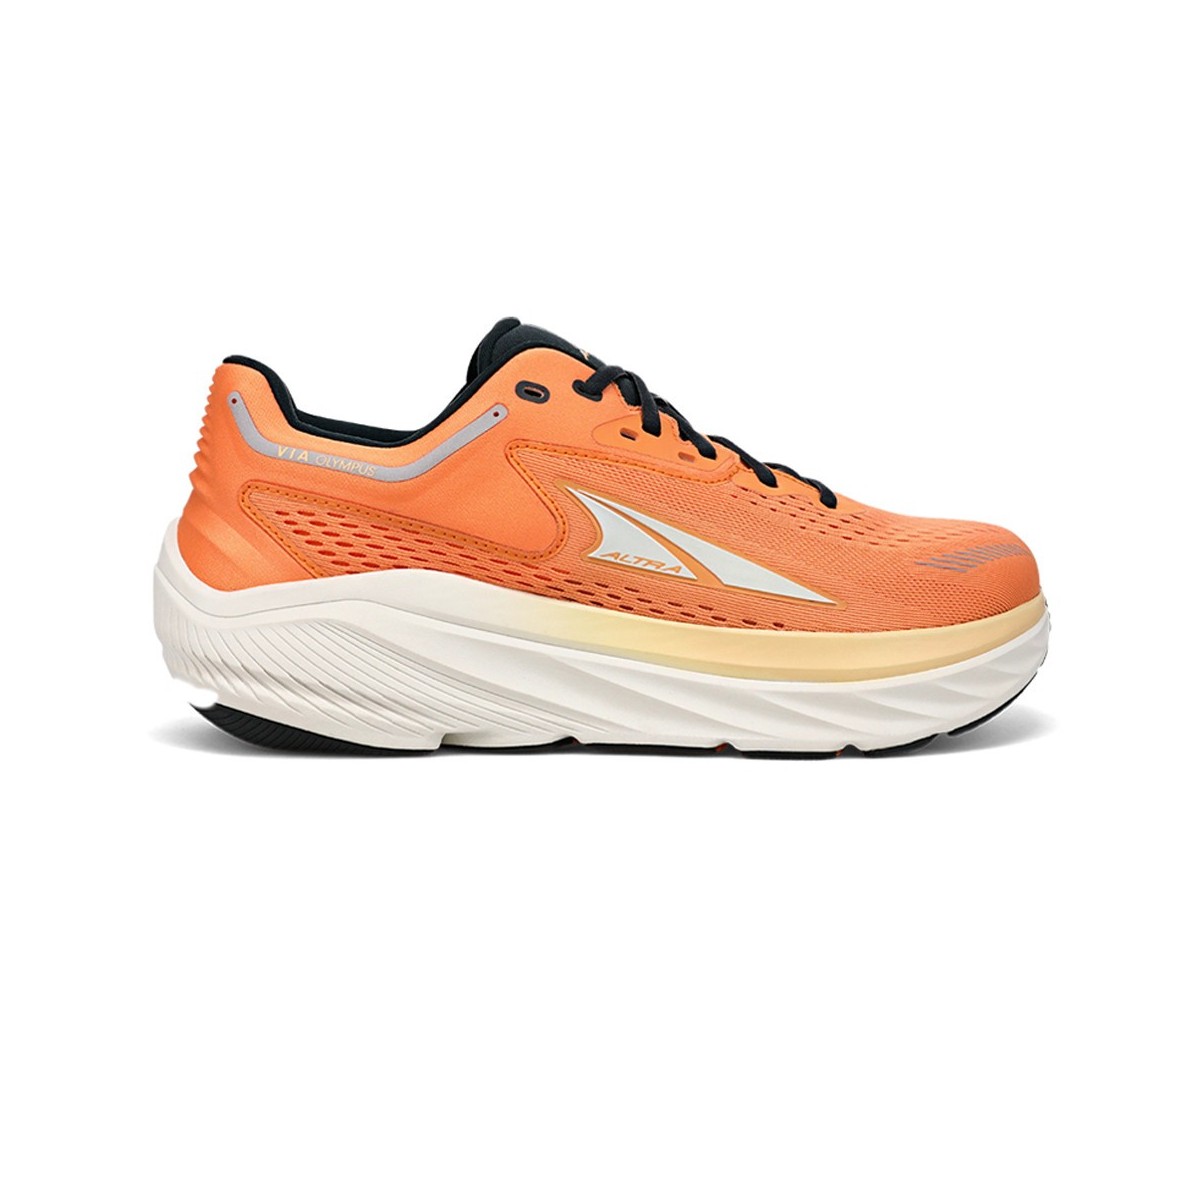 Sneakers ALTRA Via Olympus Orange AW22, Size 42 - EUR